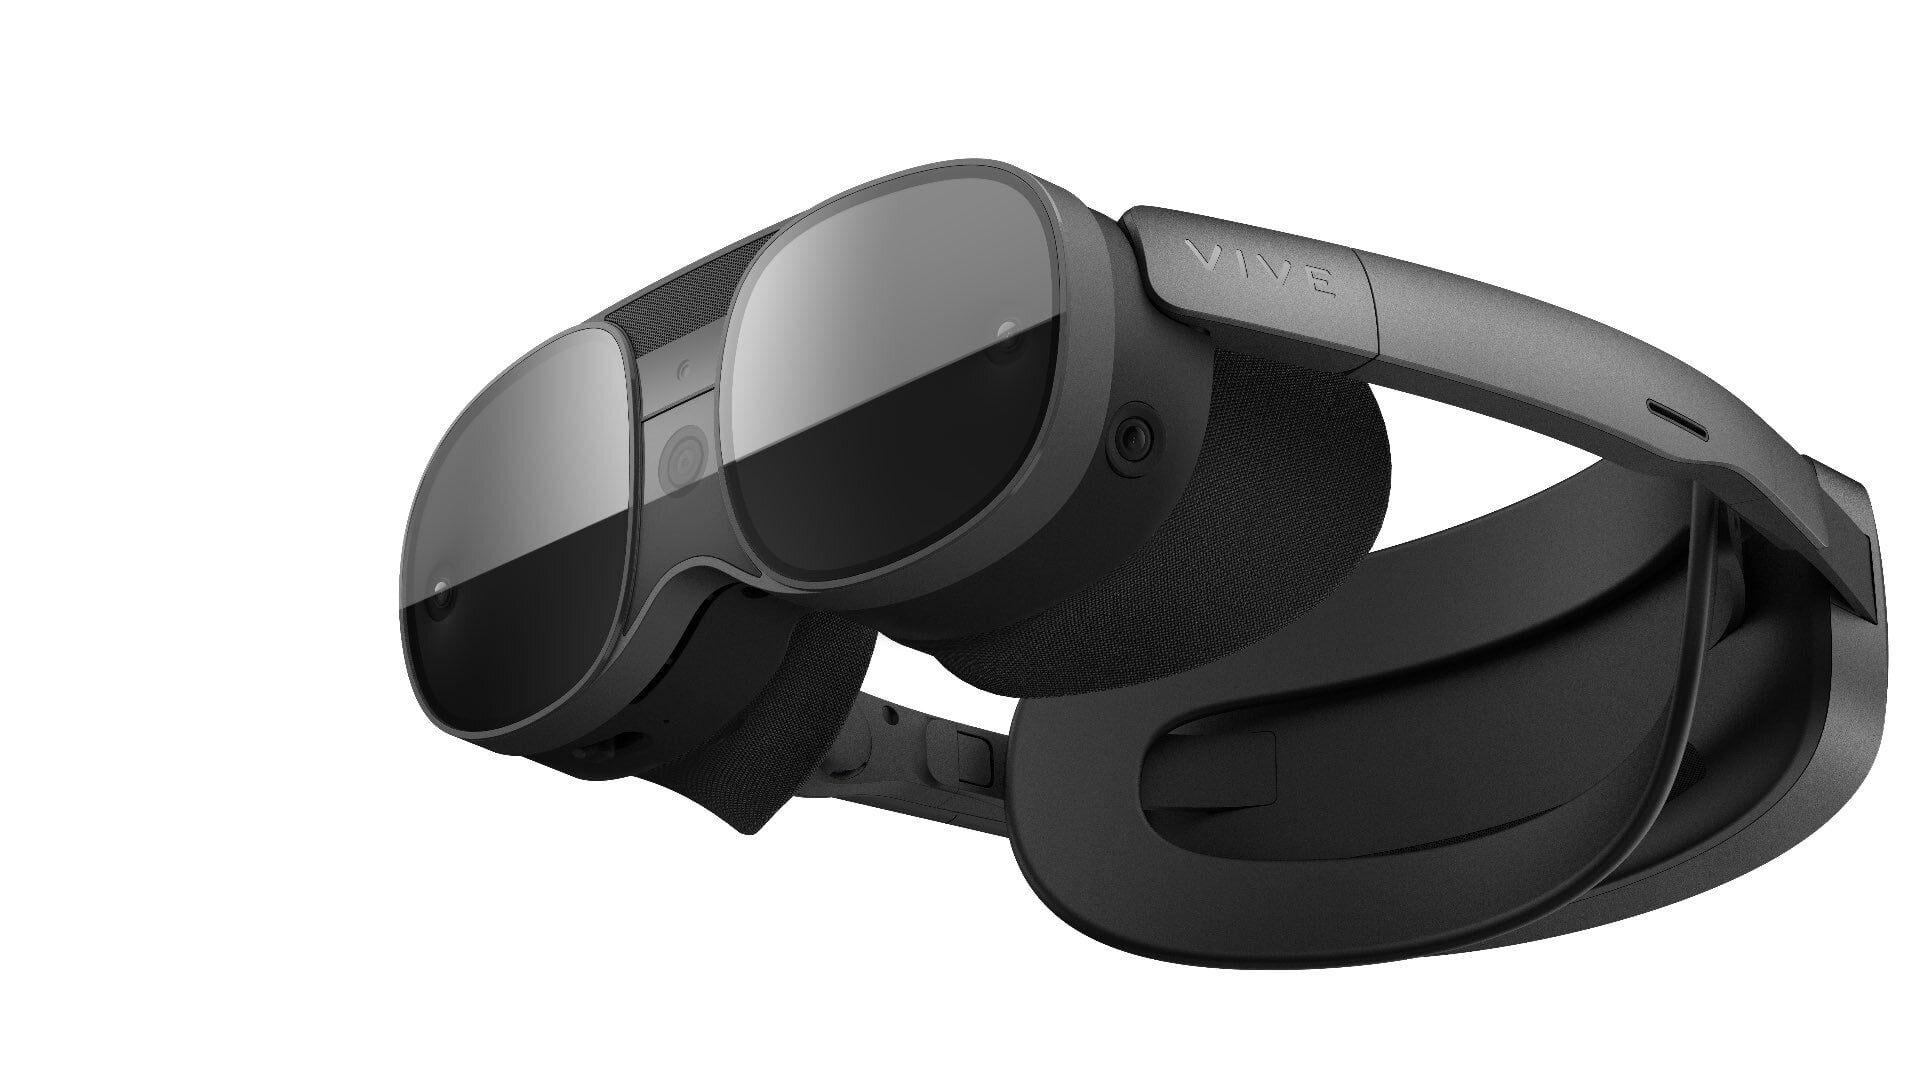 HTCs neues Headset soll "Vive XR Elite" heißen und 1400 US-Dollar kosten - Bericht